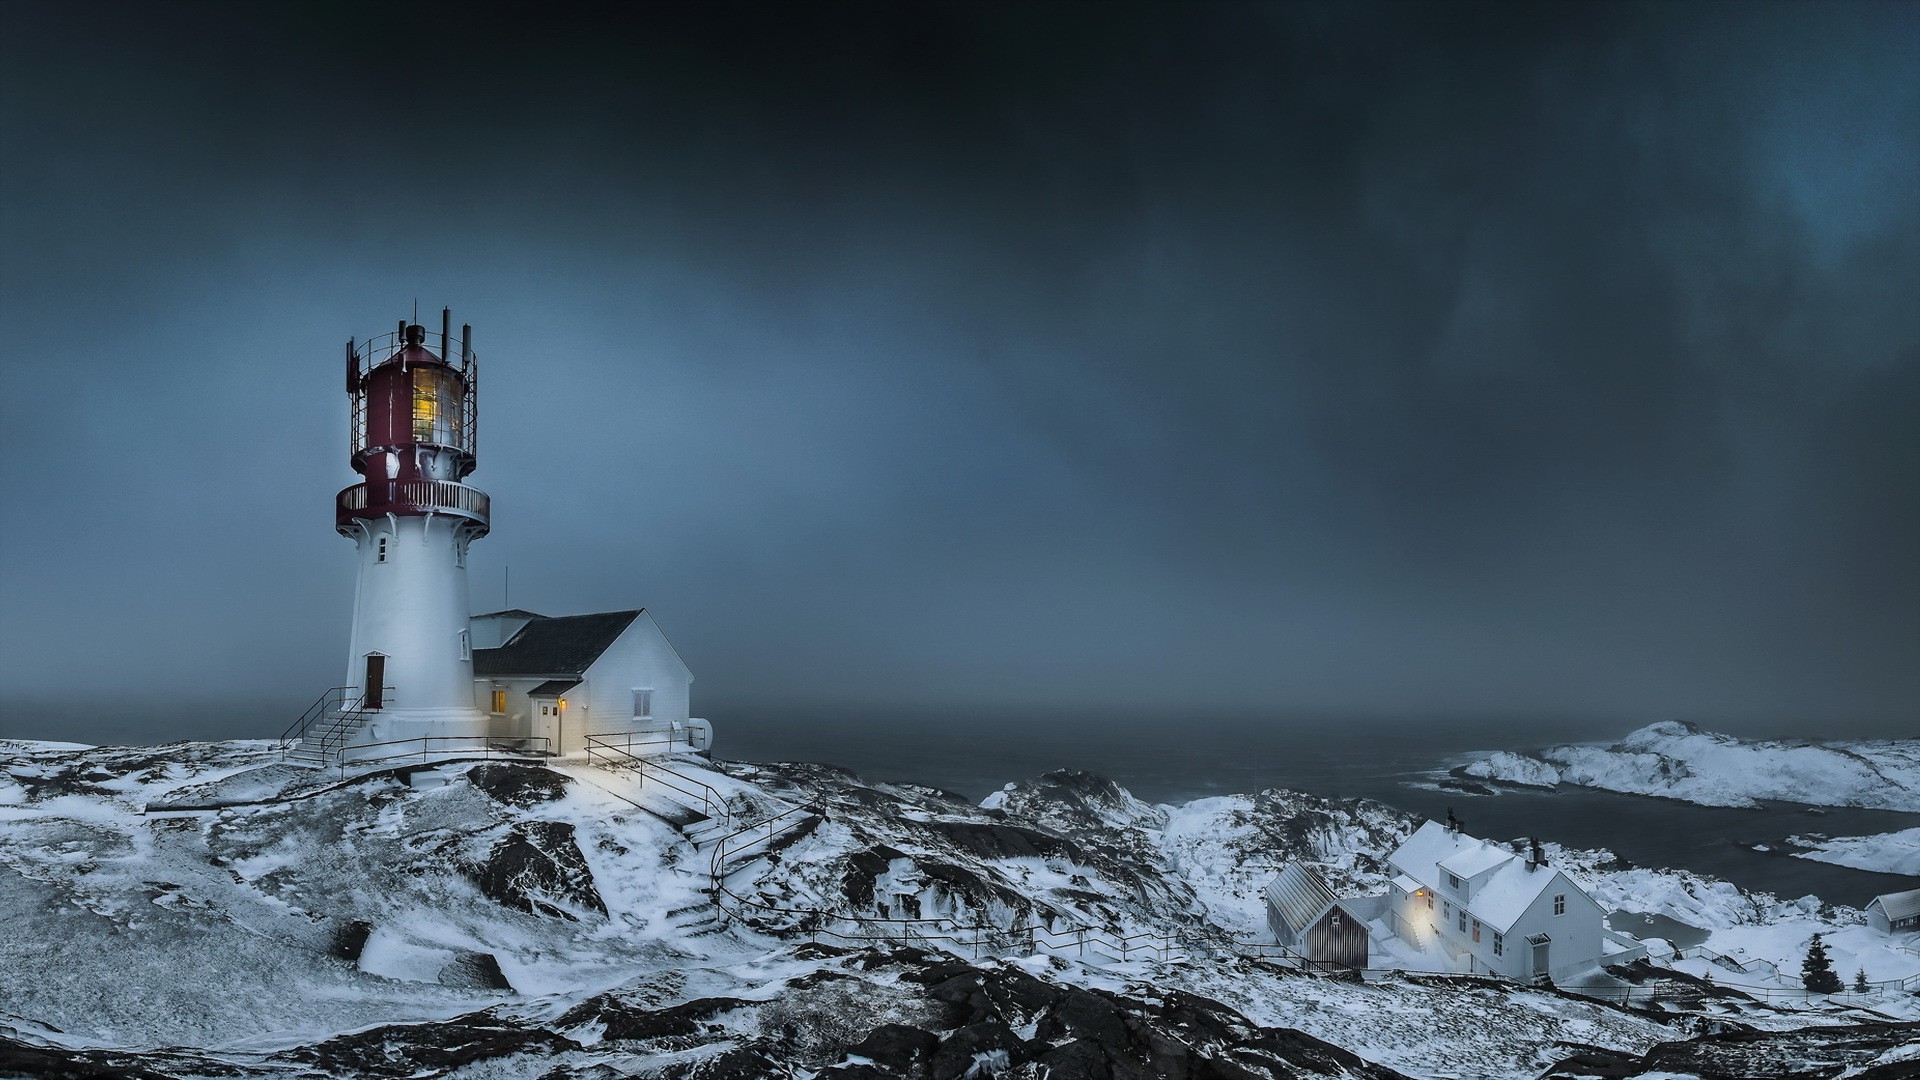 Mùa đông tuyết rơi, cây cối phủ đầy tuyết trắng và những bức tranh phong cảnh đẹp như tranh vẽ của Na Uy sẽ khiến bạn phải trầm trồ. Hãy tải ngay miễn phí những hình nền Lighthouse đầy lãng mạn và thơ mộng này để trang trí cho màn hình của bạn.